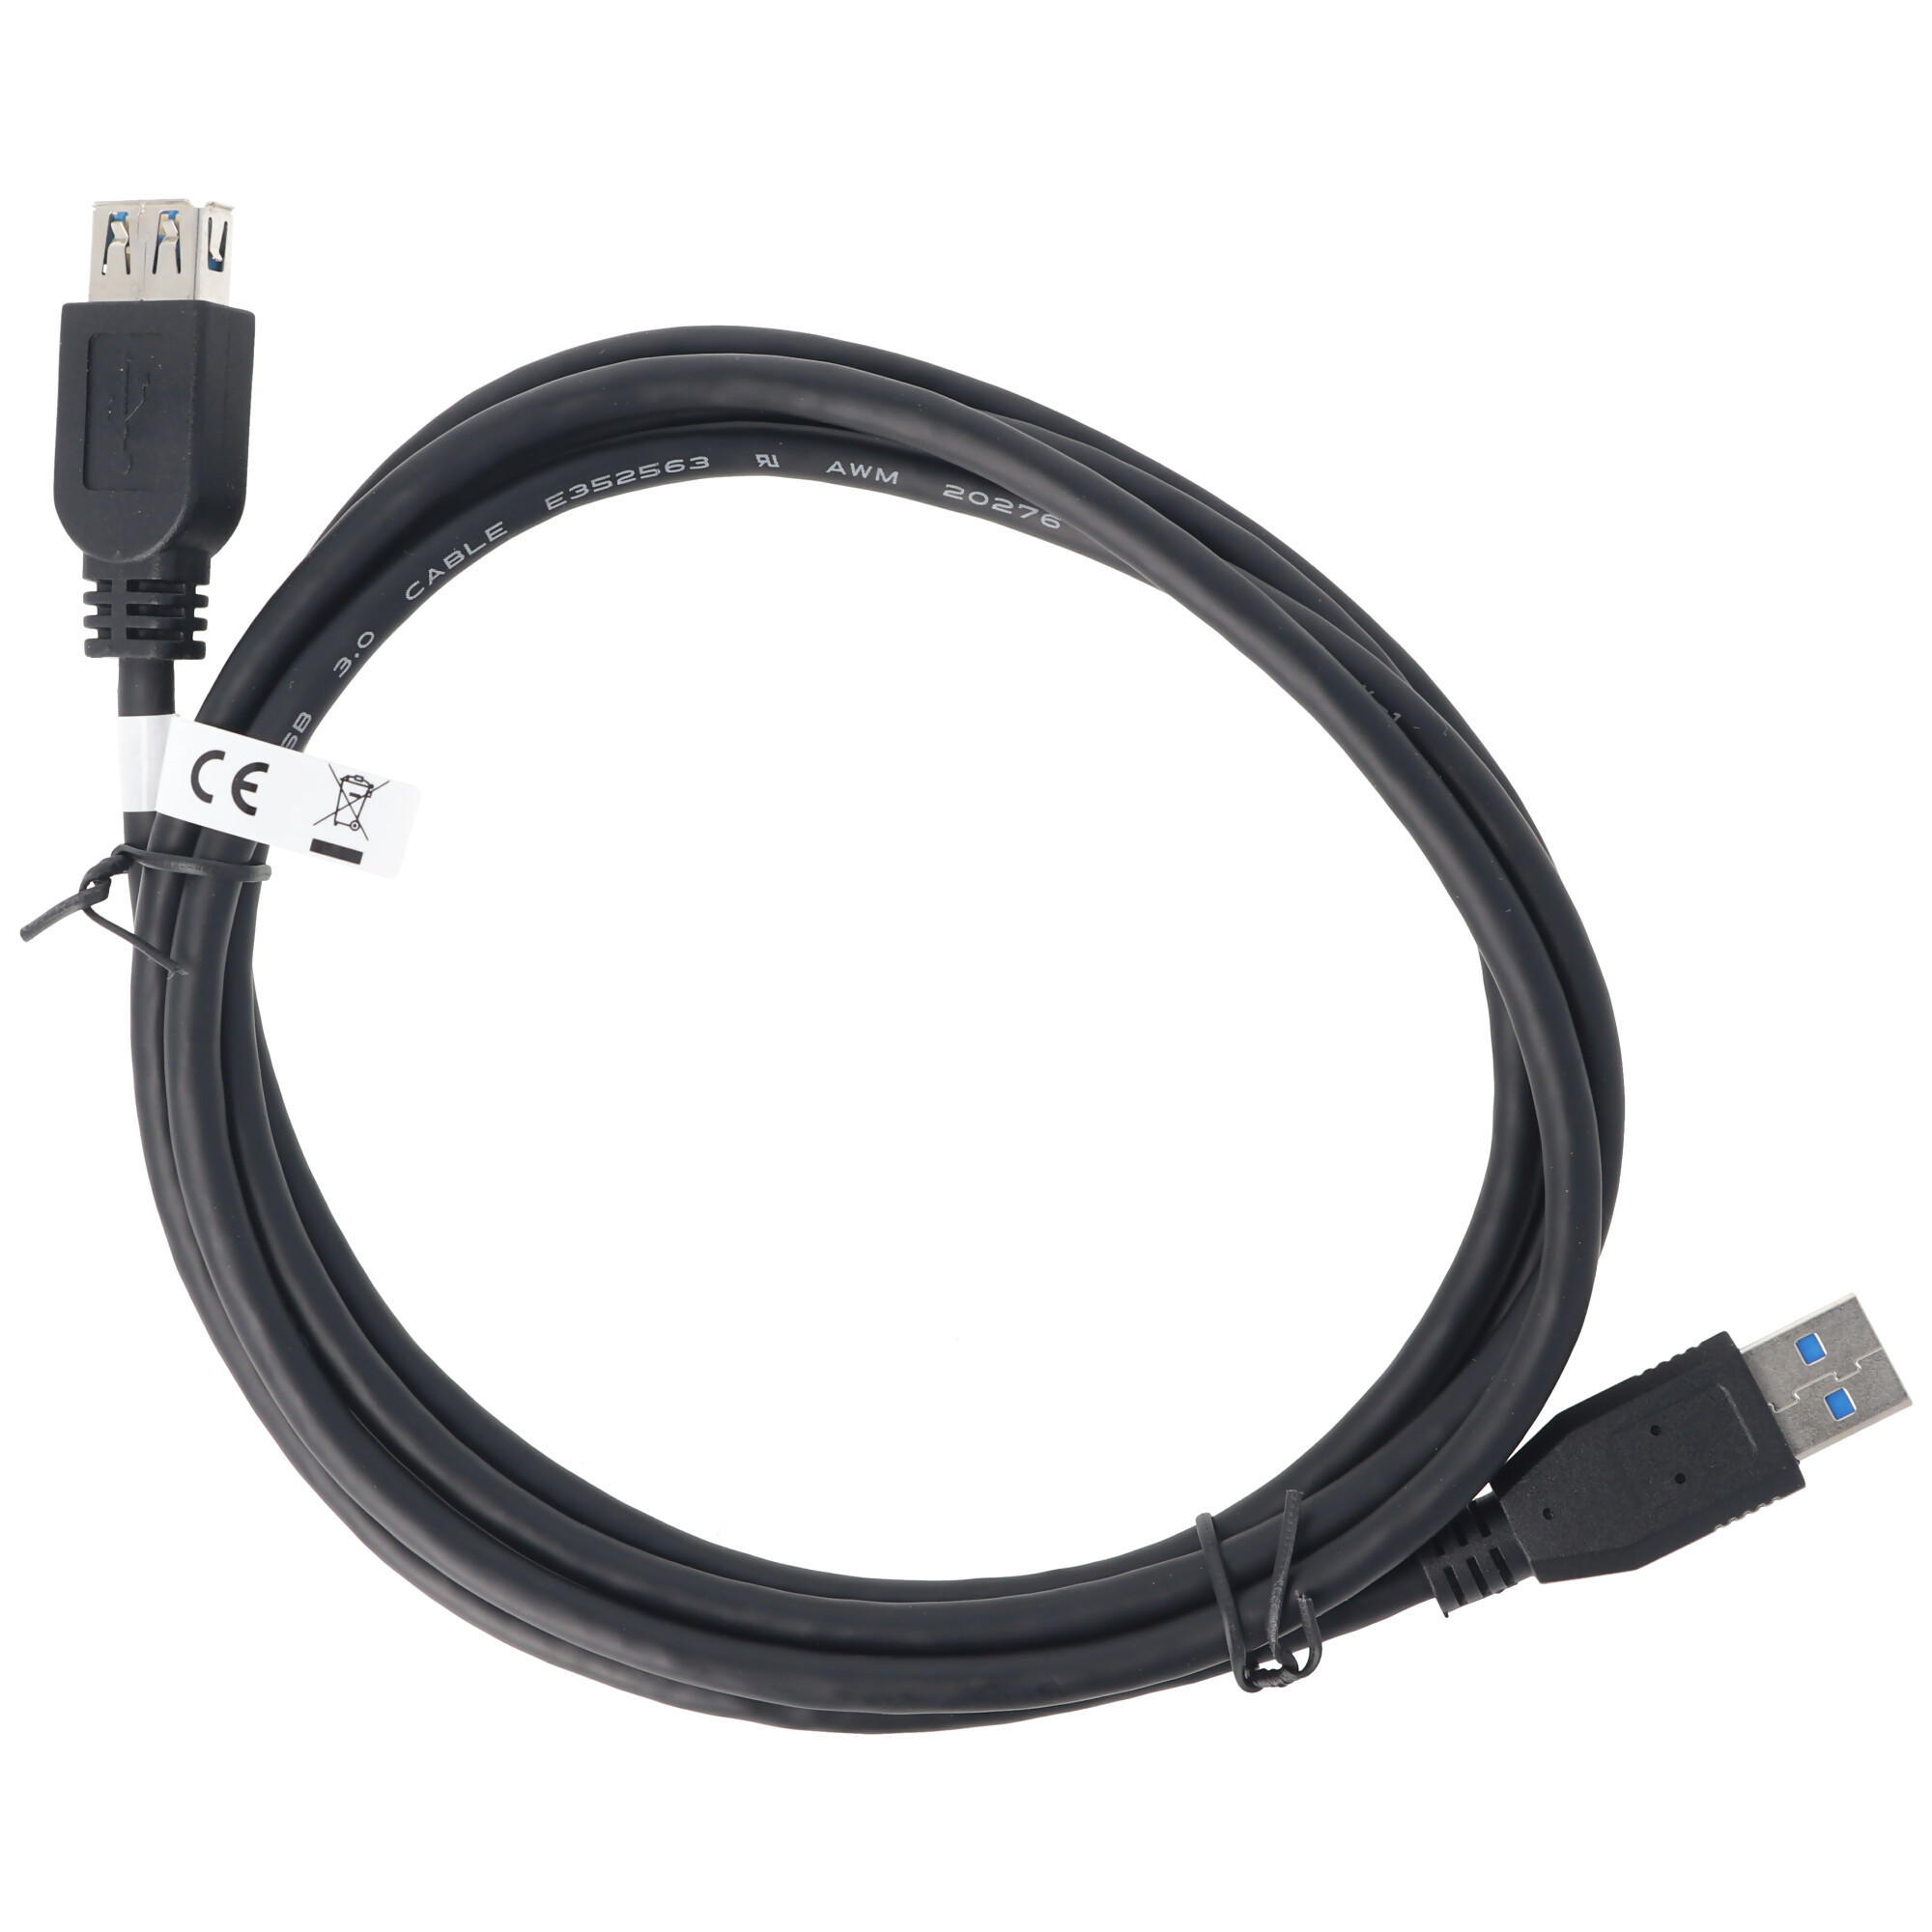 USB 3.0 SuperSpeed Verlängerungskabel 1,8 m, USB 3.0 Stecker (Typ